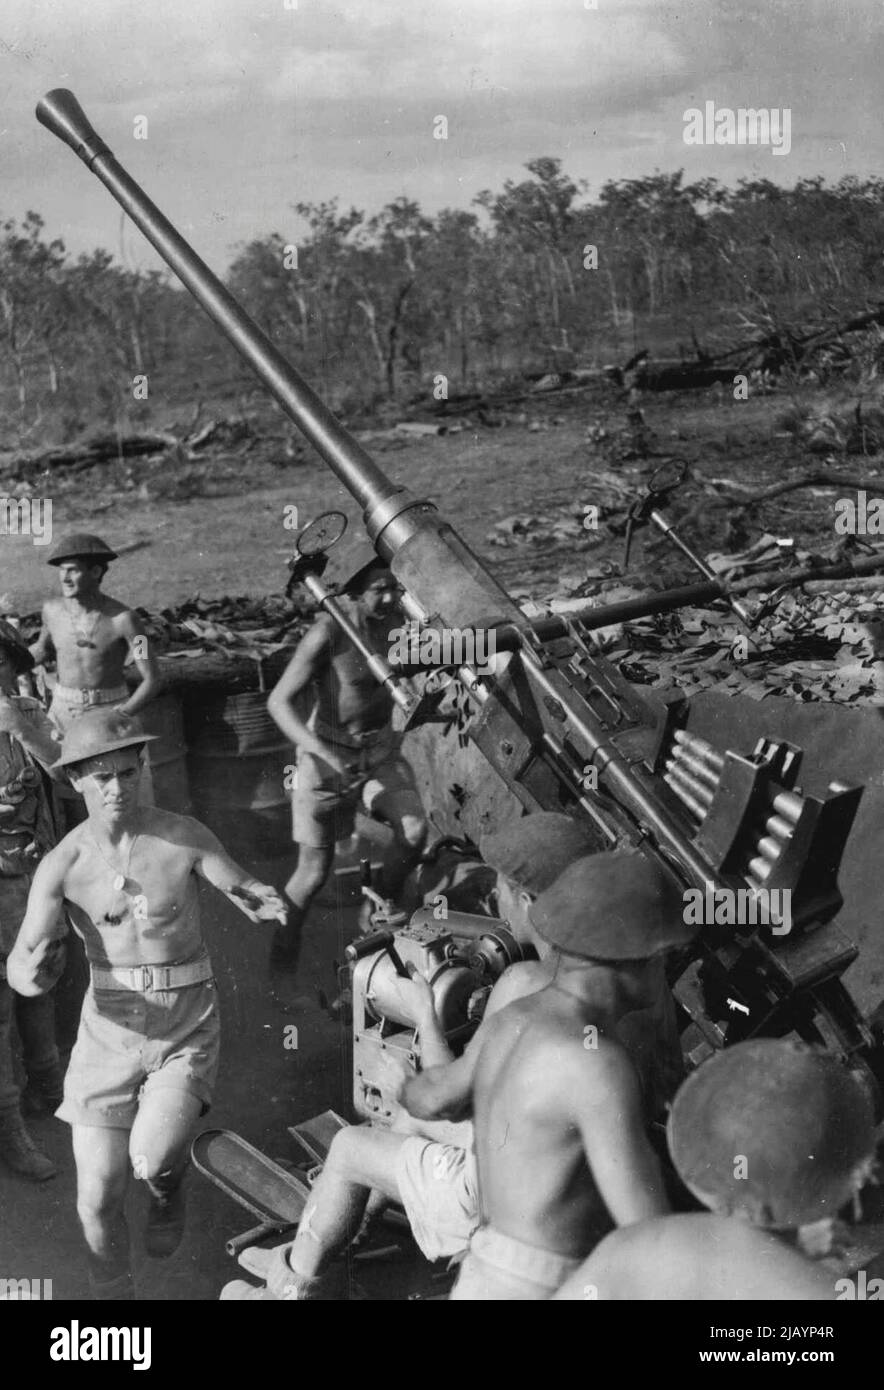 L'equipaggio di pistola leggera serie anti-aerei in azione quando hanno raggiunto la stazione di azione accanto alla loro pistola (membri dell'equipaggio stanno salendo in posizione accanto alla loro pistola in questo colpo.). Agosto 28, 1943. (Foto di H. Rodda). Foto Stock